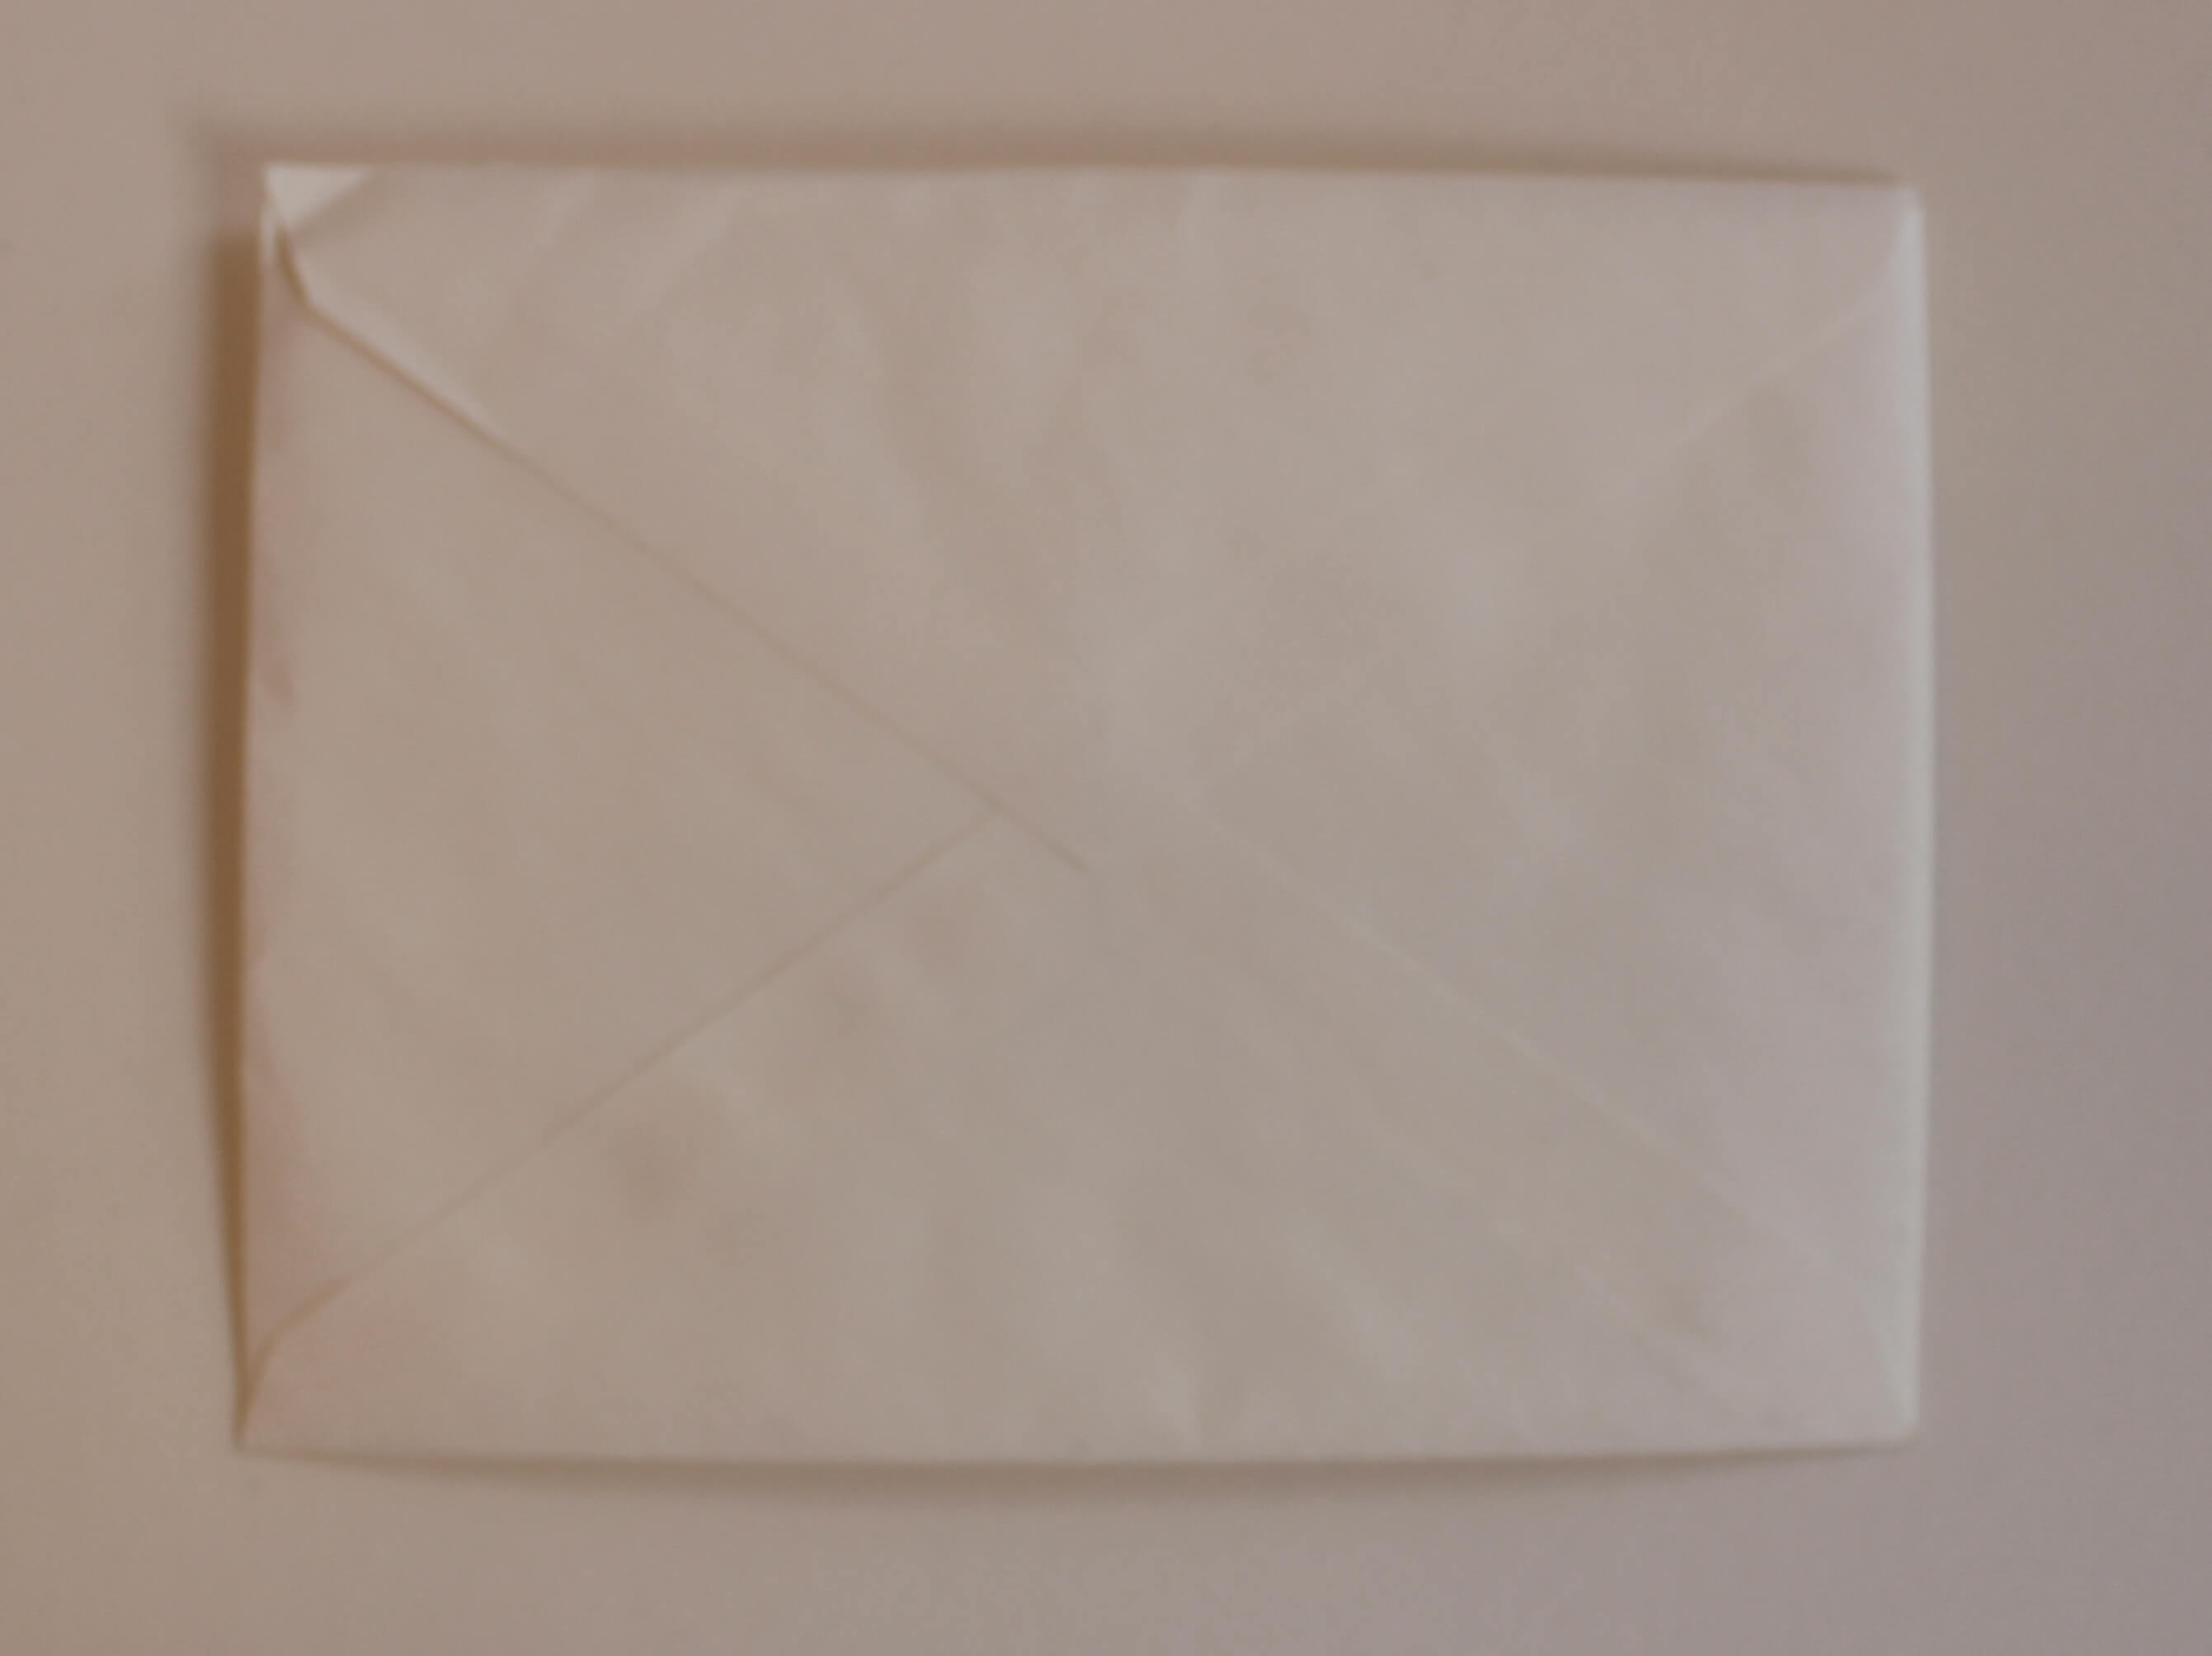 Back of unopened white envelope